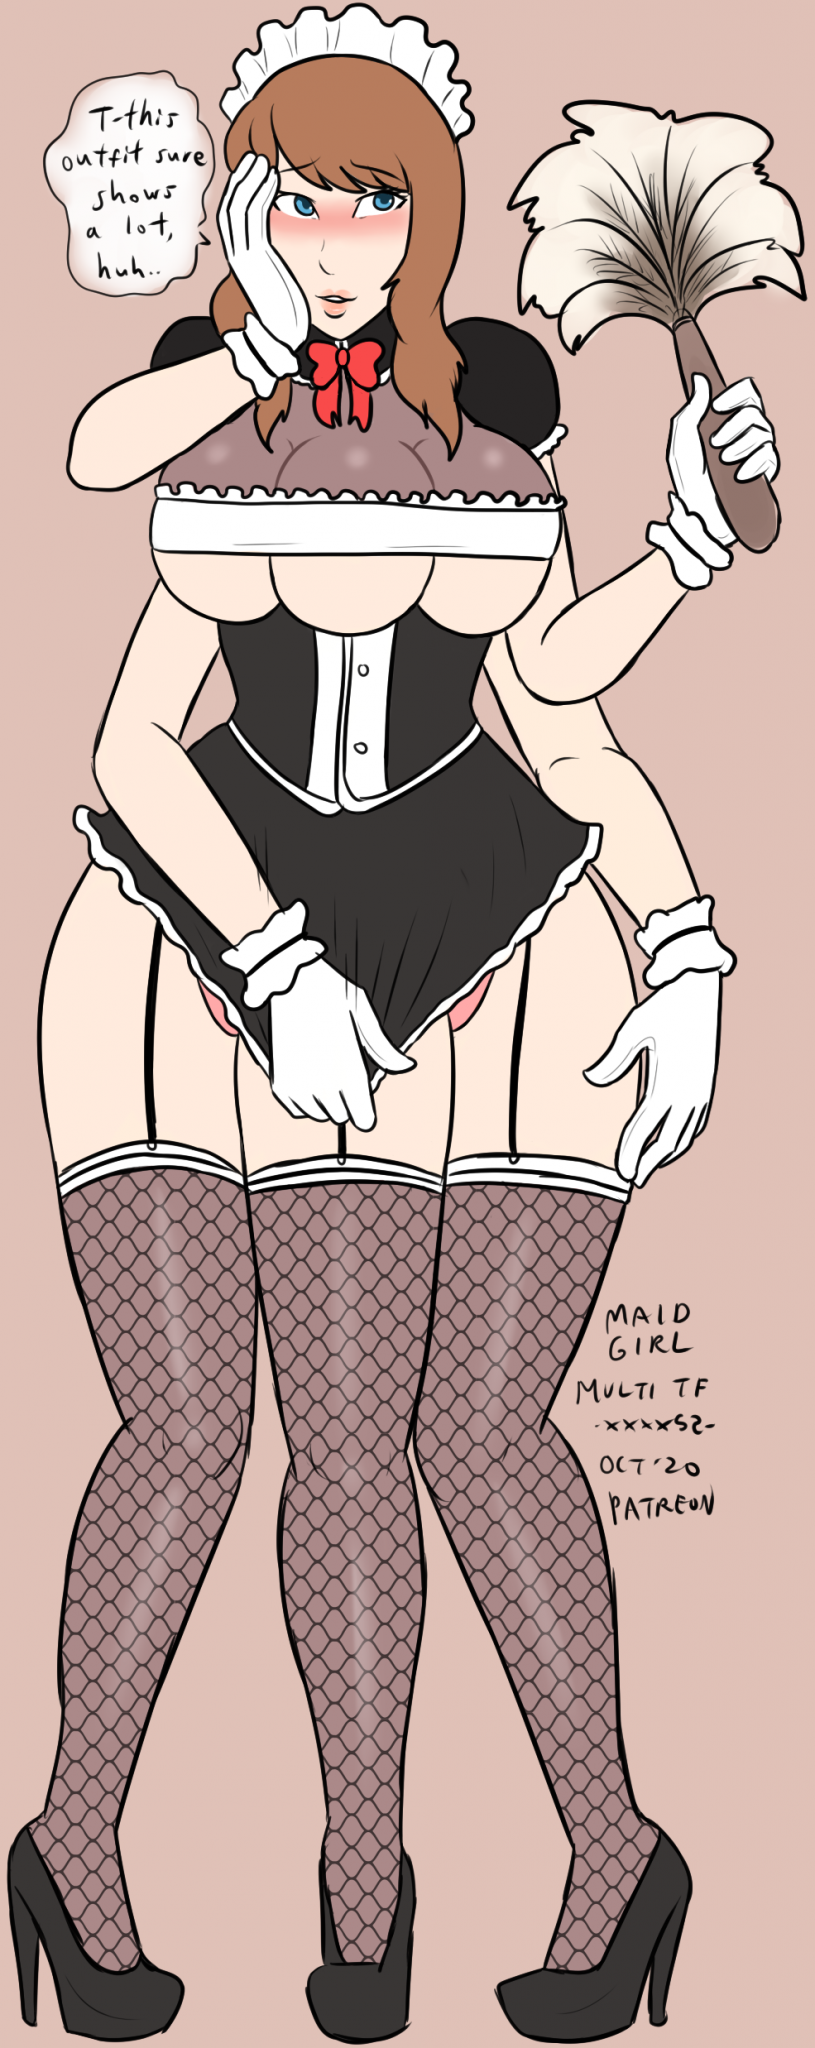 Maid Girl (inspired by Access' Rosaline)
Patreon reward sketch done by xxxx52
[url=https://twitter.com/xxxx52official]xxxx52's Twitter[/url]
